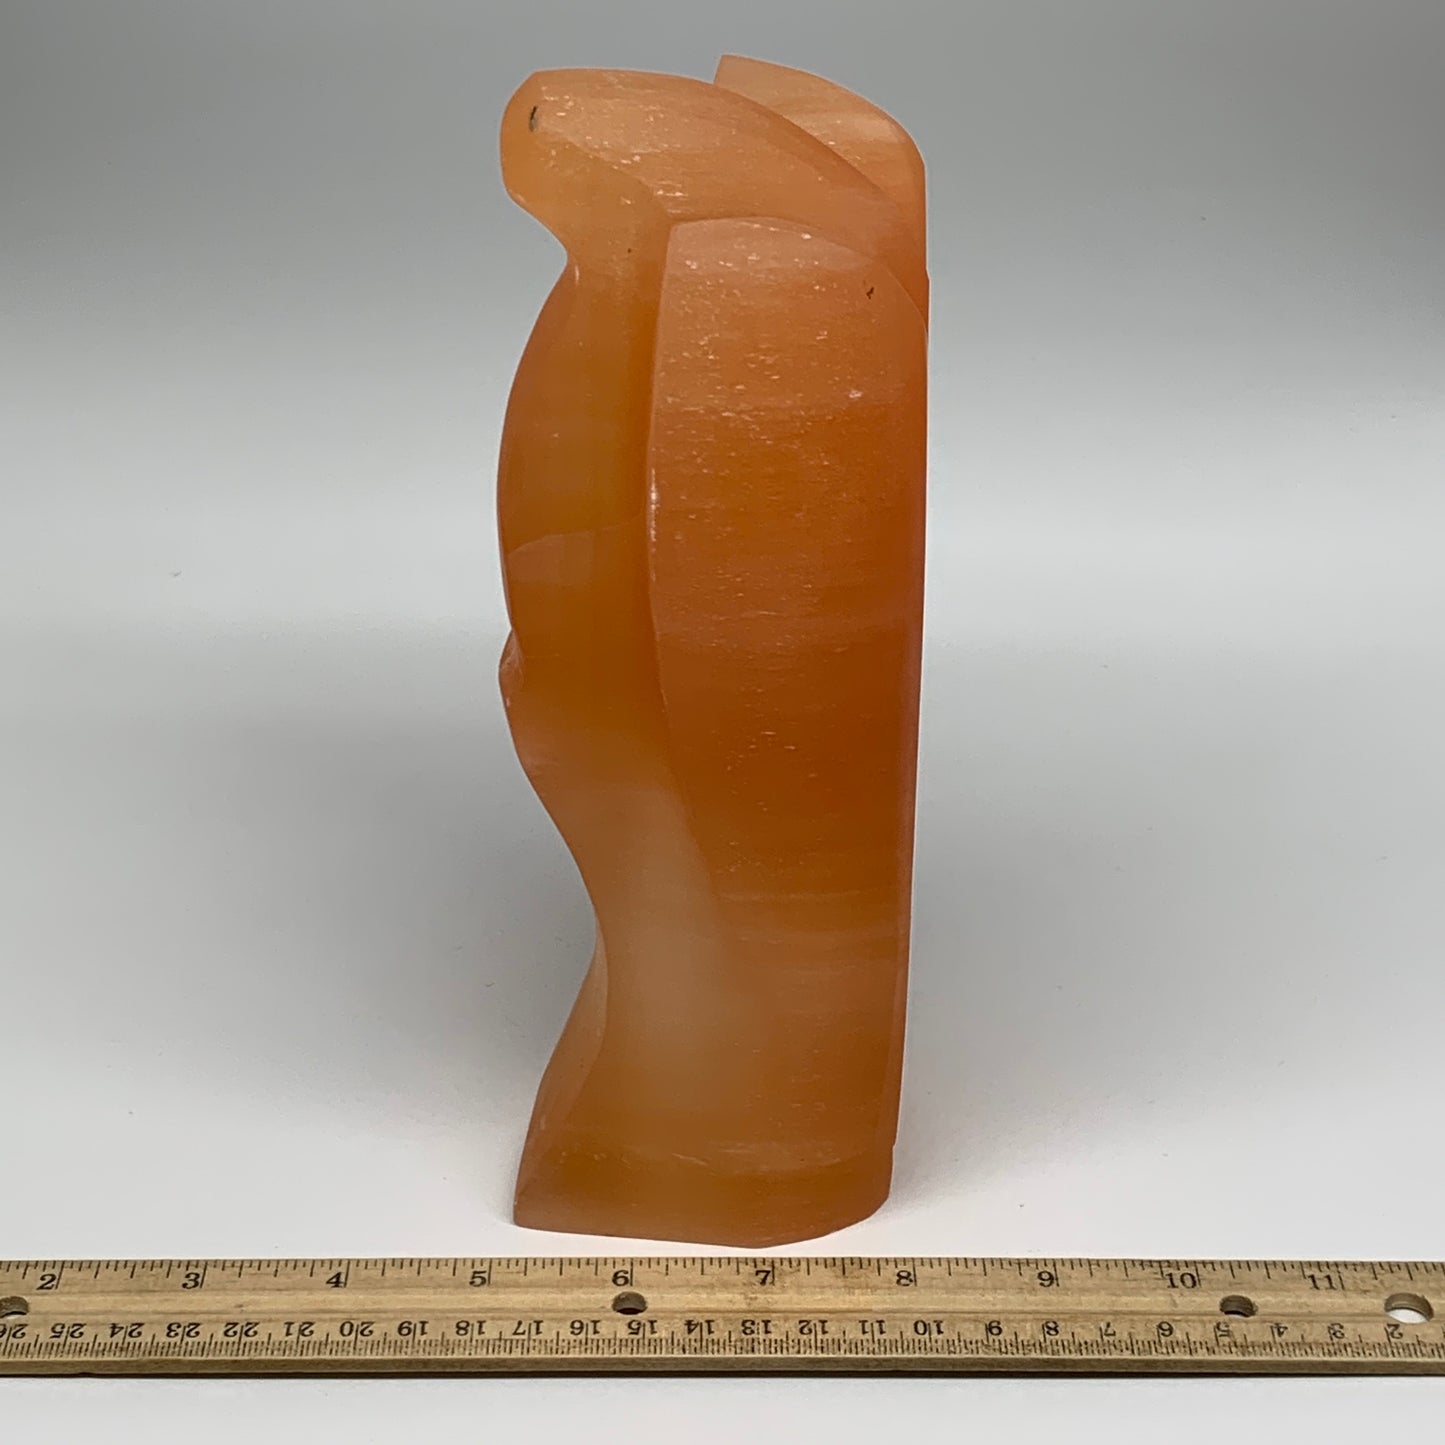 1792g, 8.25"x4.2"x2.8" Orange Selenite (Satin Spar) Angel Lamps @Morocco,B9434